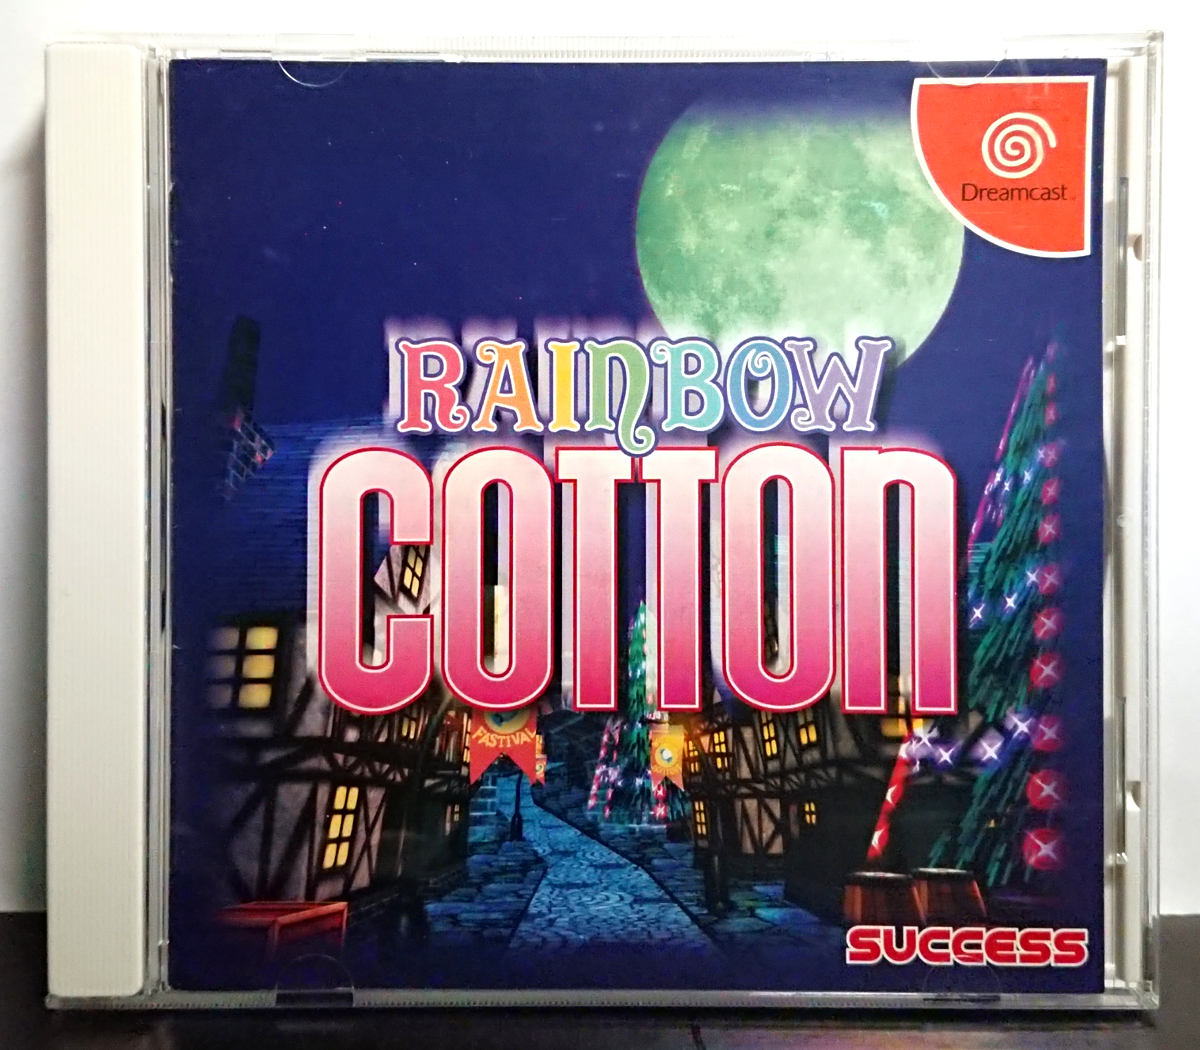 DC Dreamcast soft Rainbow cotton SEGA Dreamcast Rainbow Cotton